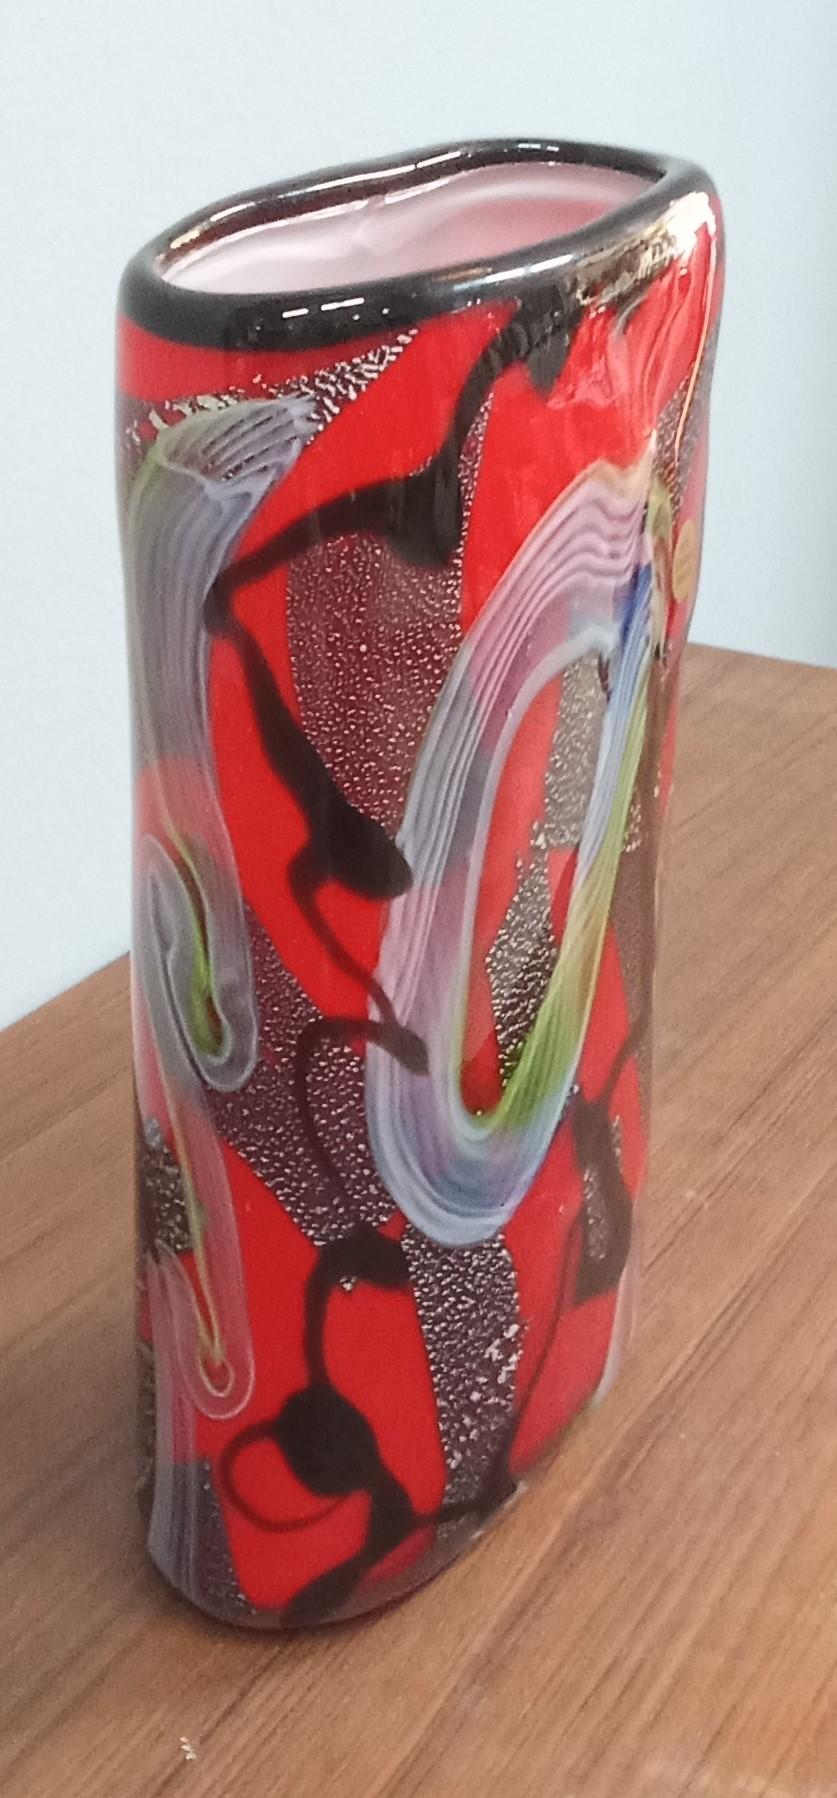 Bellissimo vaso rosso con motivo astratto multicolore, nero, verde, bianco e celeste con polvere d'argento che crea una suggestiva texture di forme e colori.
Vaso in vetro di Murano (Venezia). Anni '80 circa.